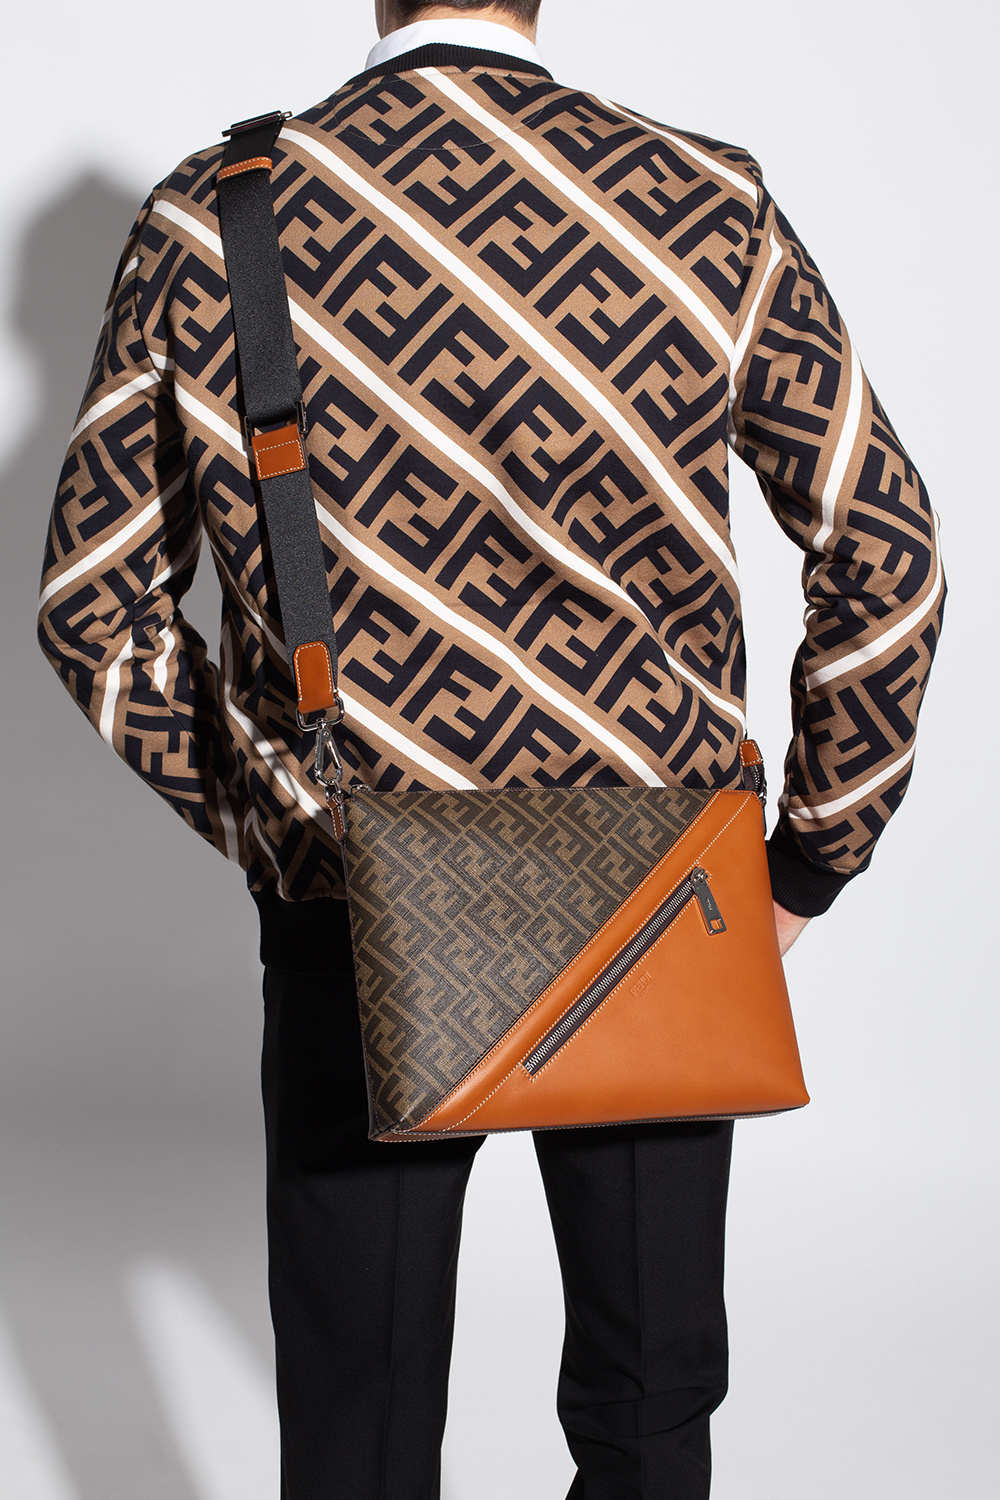 Fendi ‘Messenger’ handbags bag